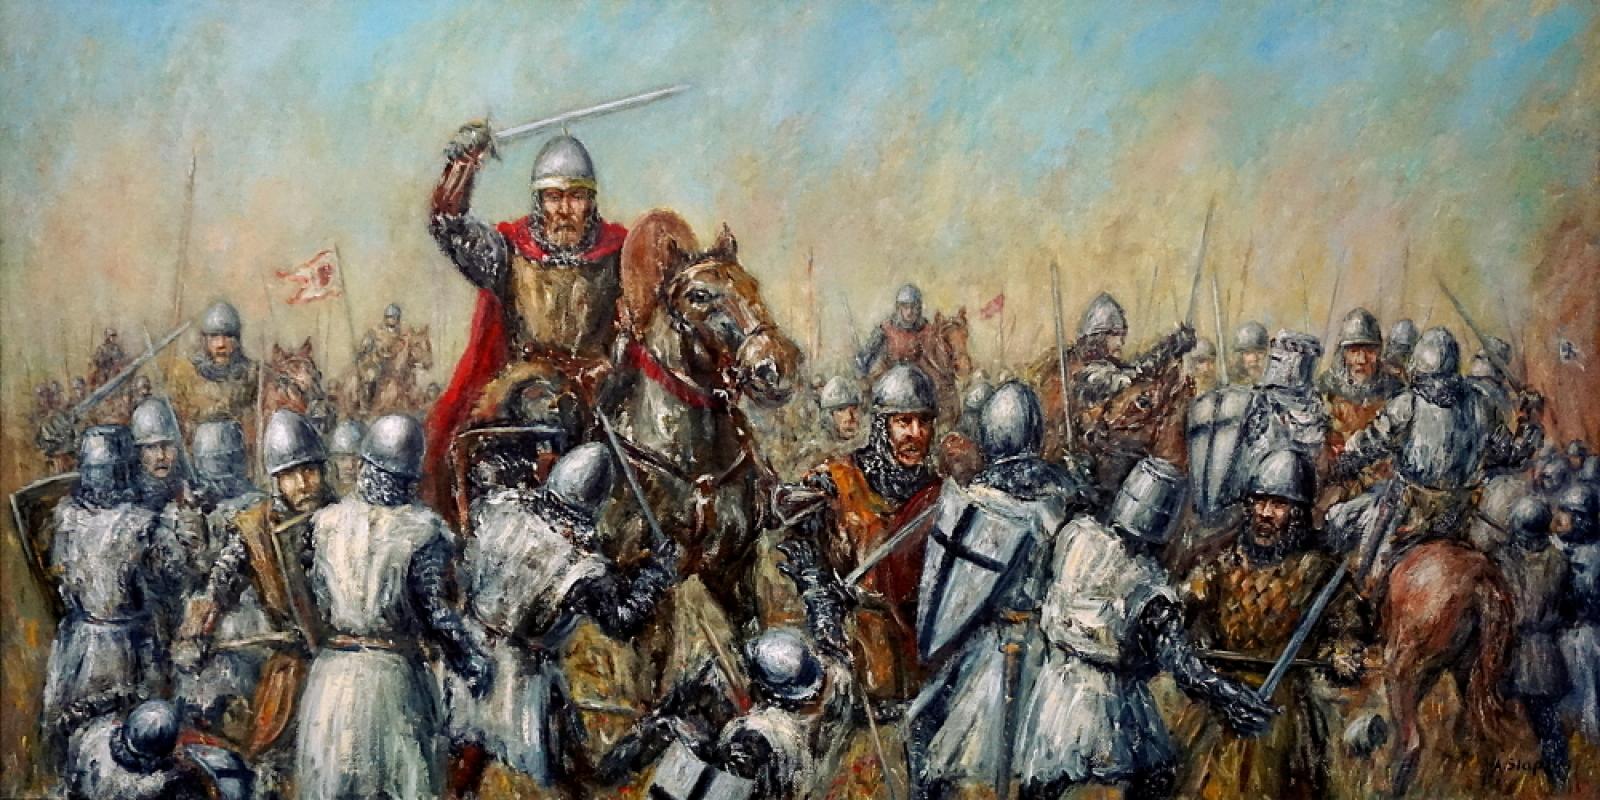 Jei ne 1260 m. liepos 13 d Žemaičių laimėtas Durbės mūšis, Lietuvos nebūtų nei kvapo